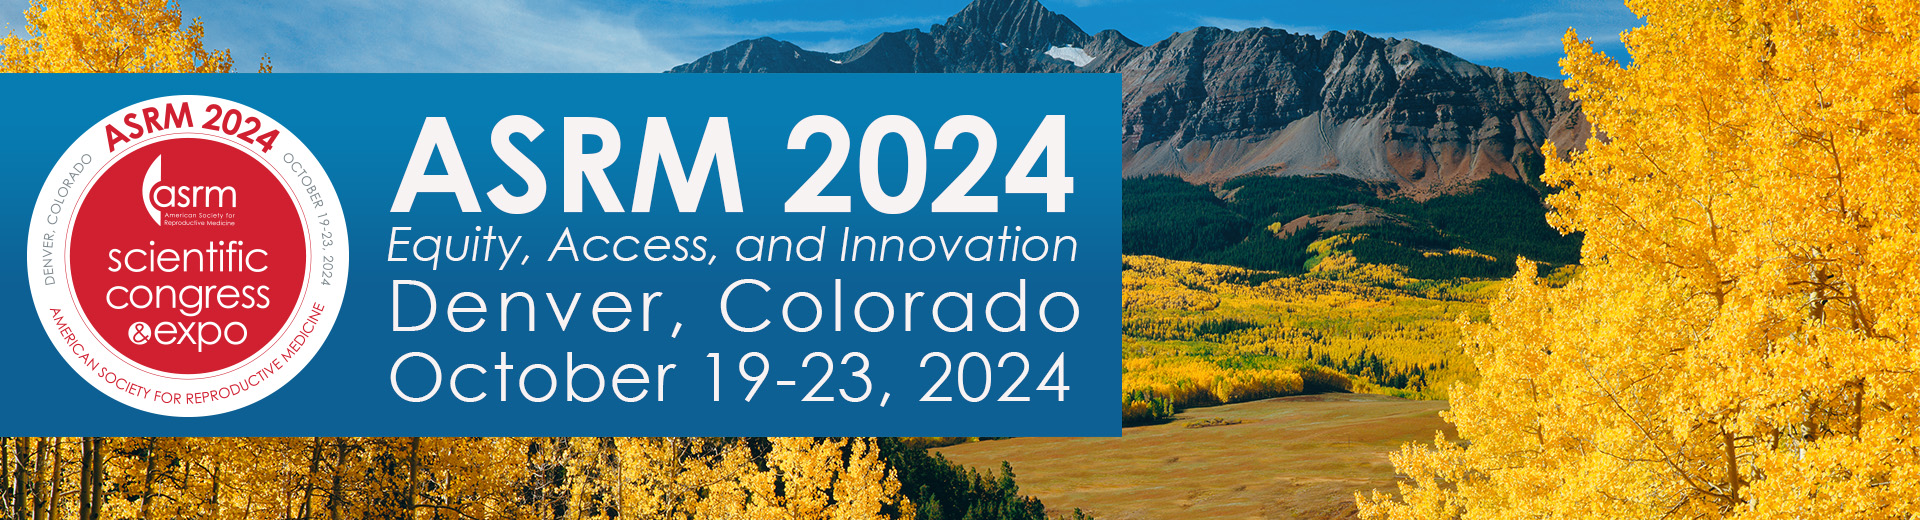 2024 ASRM Scientific Congress & Expo